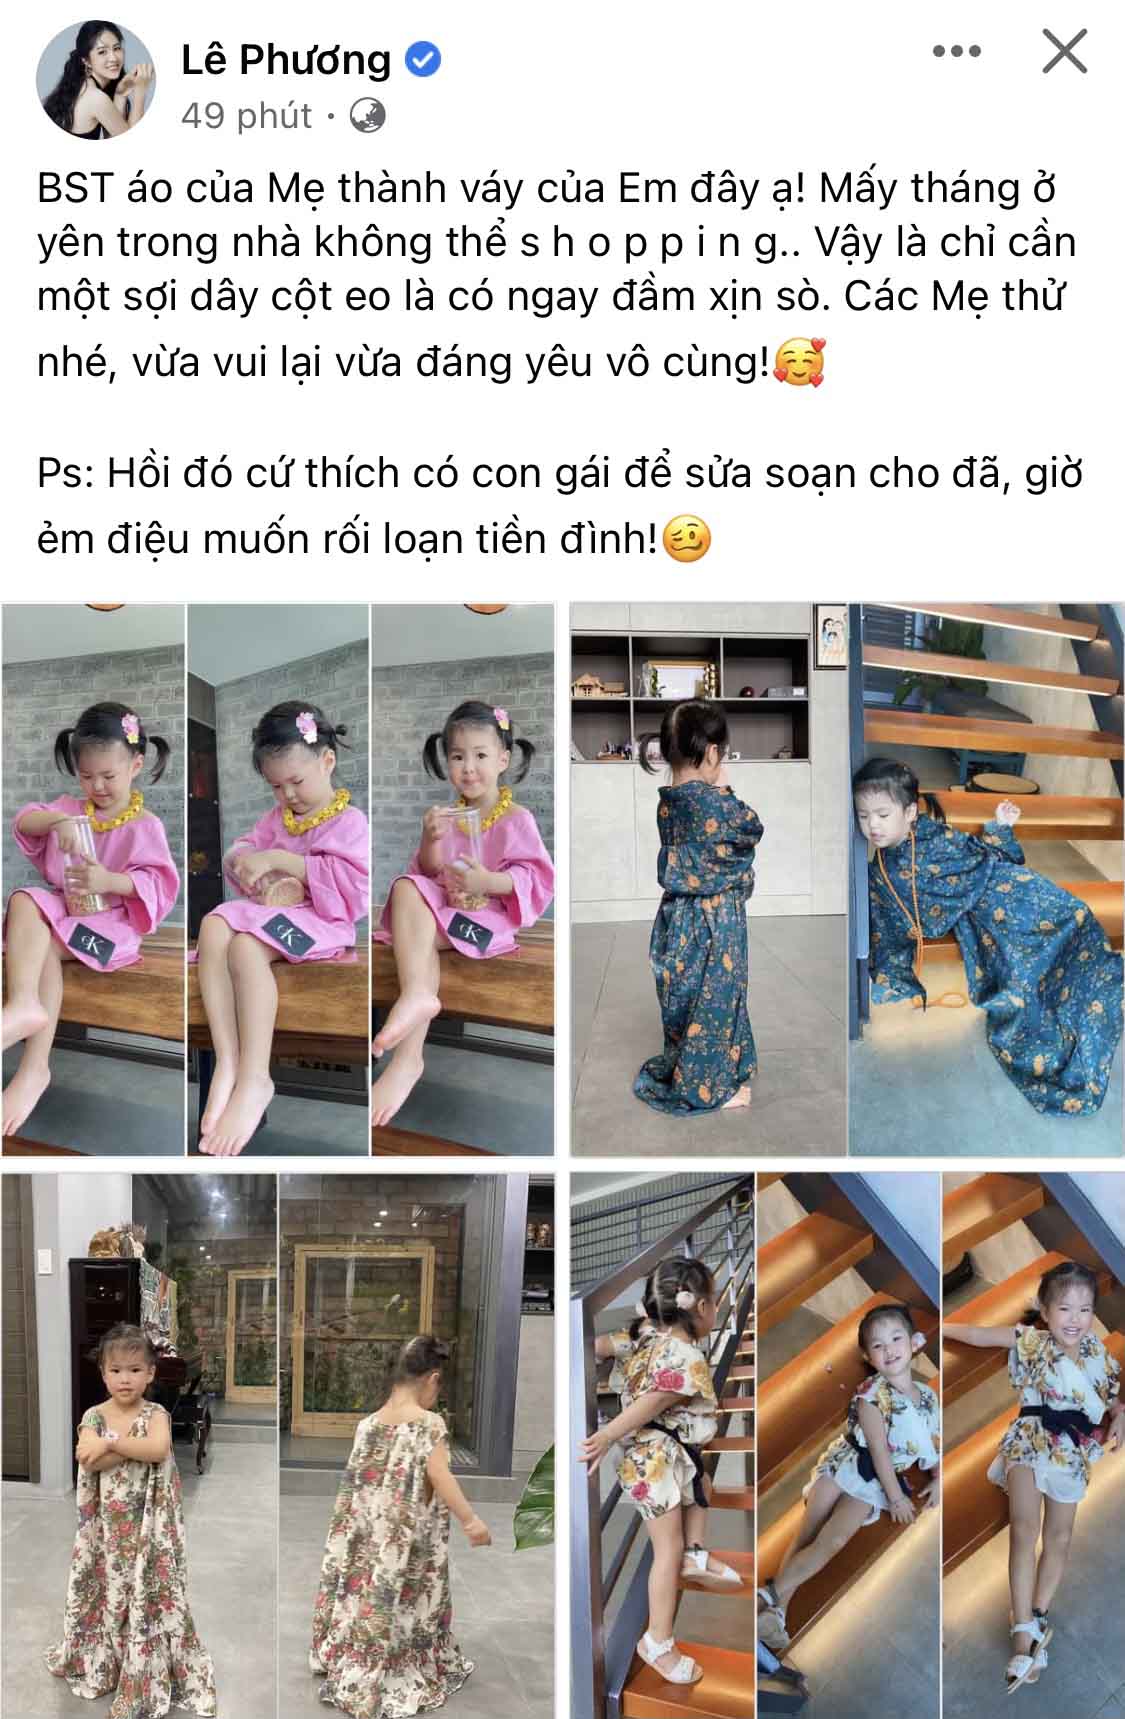 Mùa dịch khó sắm quần áo, Lê Phương hô biến đồ bộ U40 cho con gái 2 tuổi mặc - 1